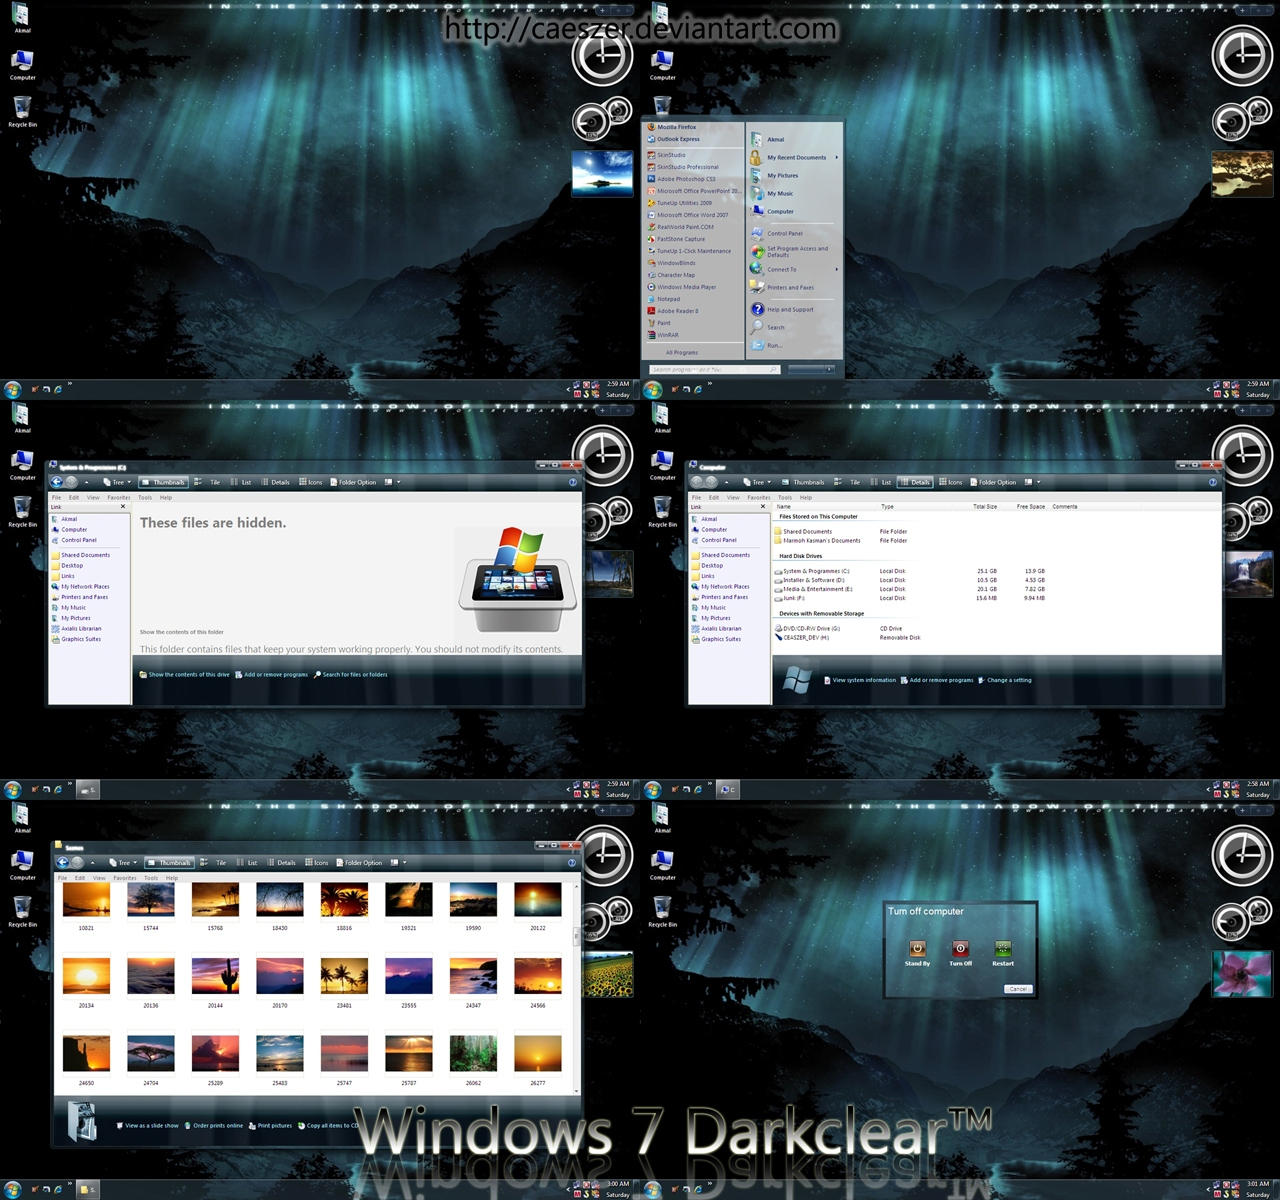 Windows 7 Darkclear for XP  full